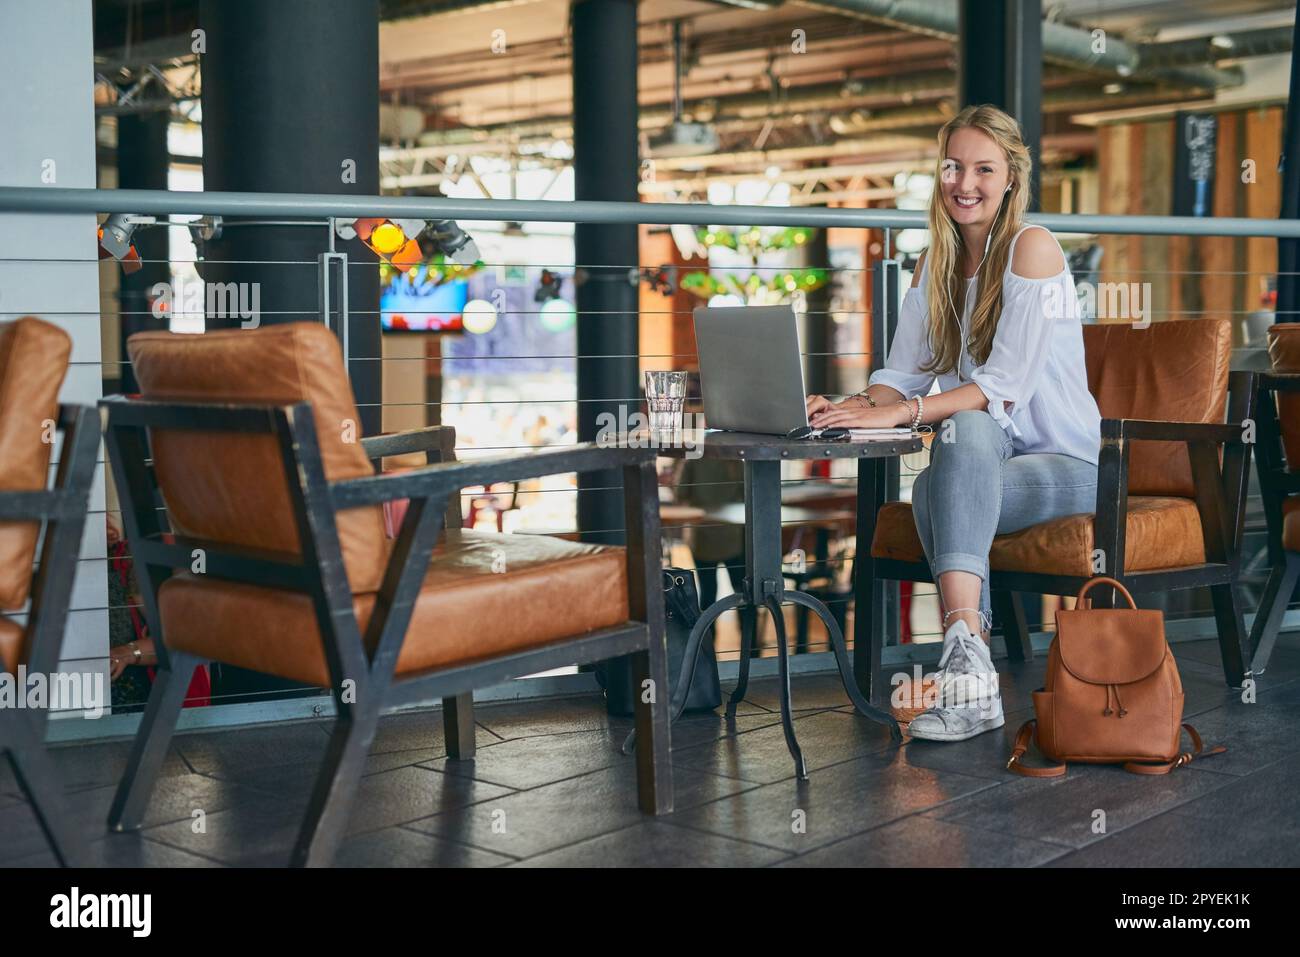 Dieses Café hat ein tolles WLAN. Porträt einer attraktiven jungen Frau, die ihren Laptop benutzt, während sie in einem Café sitzt. Stockfoto